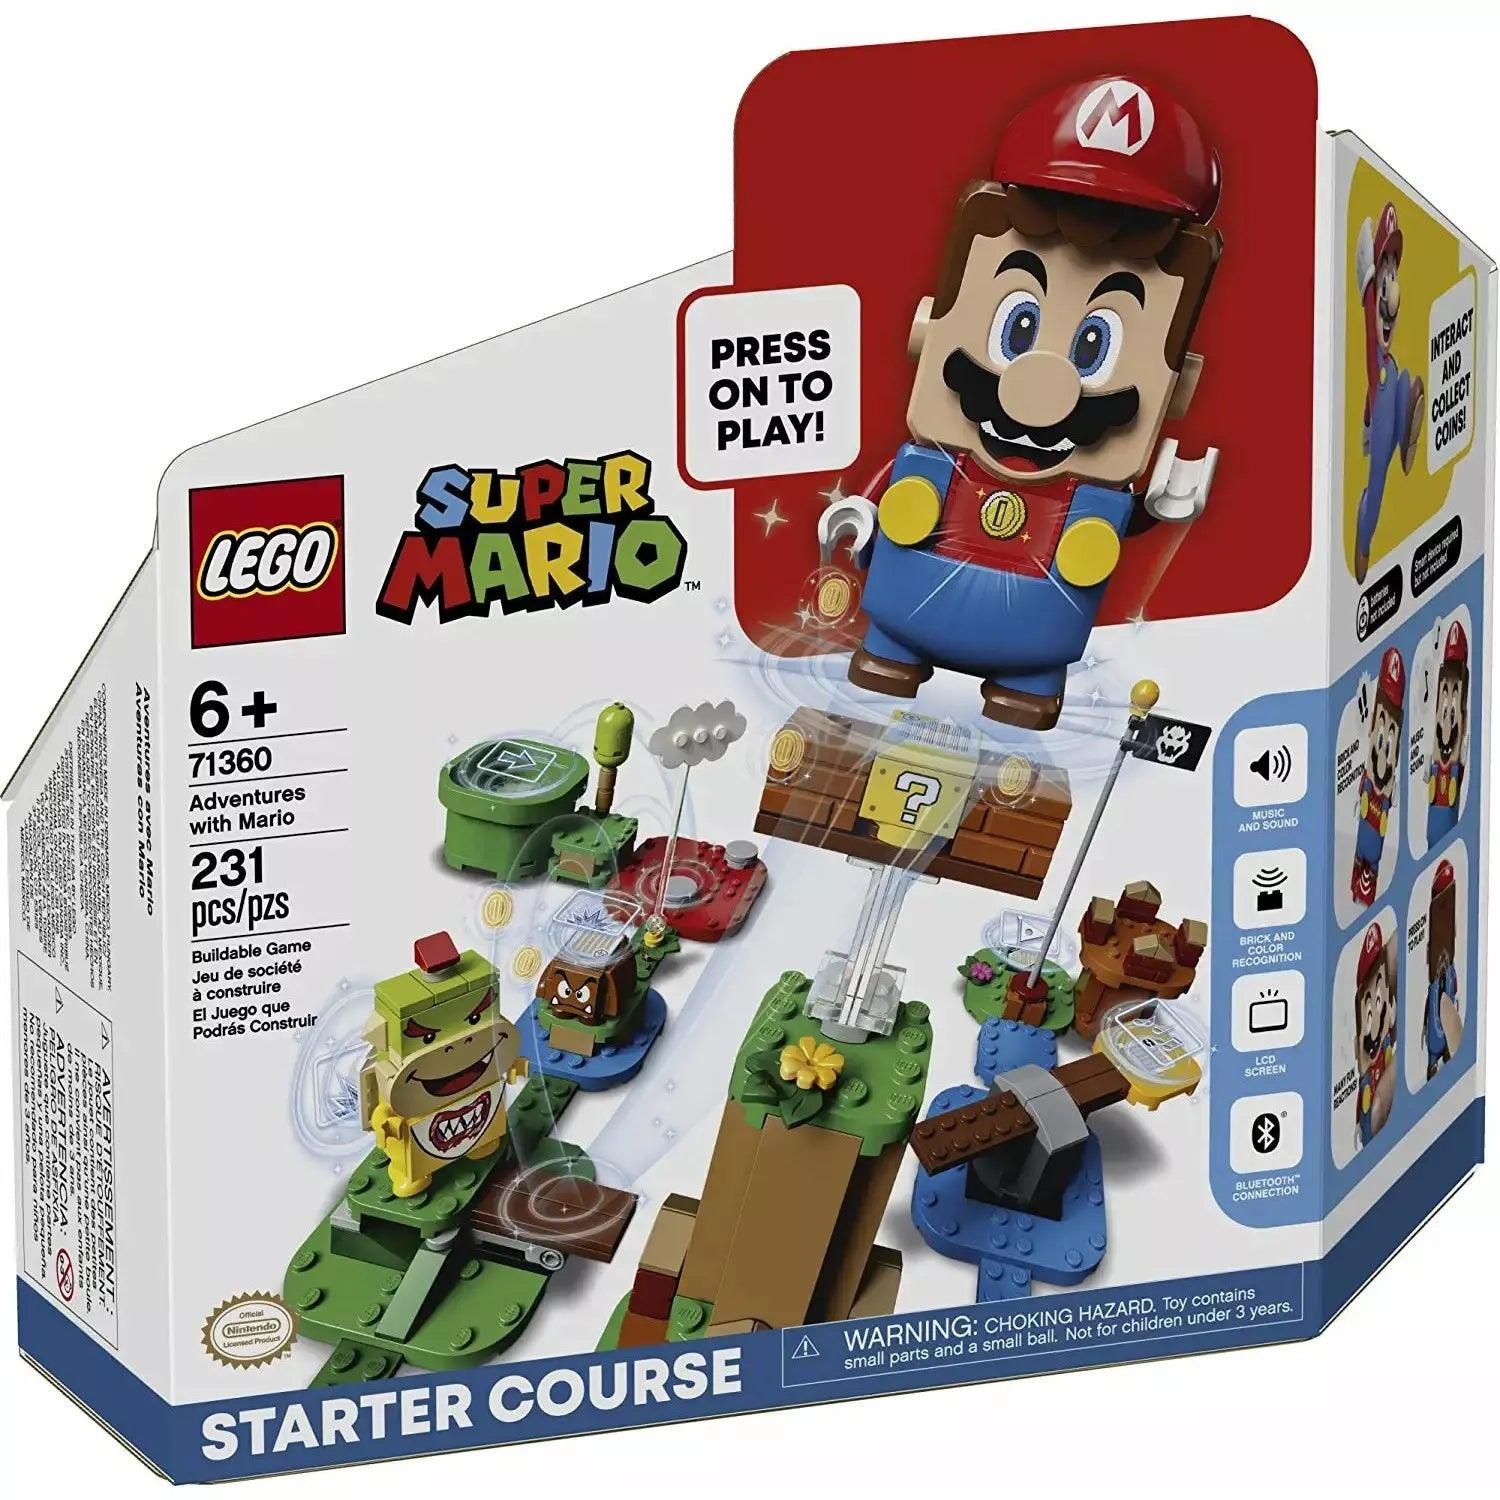 LEGO Super Mario 71360 Adventures With Mario Starter Course, Set Featuring Mario, Bowser Jr. and Goomba Figures (231 Pieces) - BumbleToys - 6+ Years, Boys, LEGO, OXE, Pre-Order, Super Mario